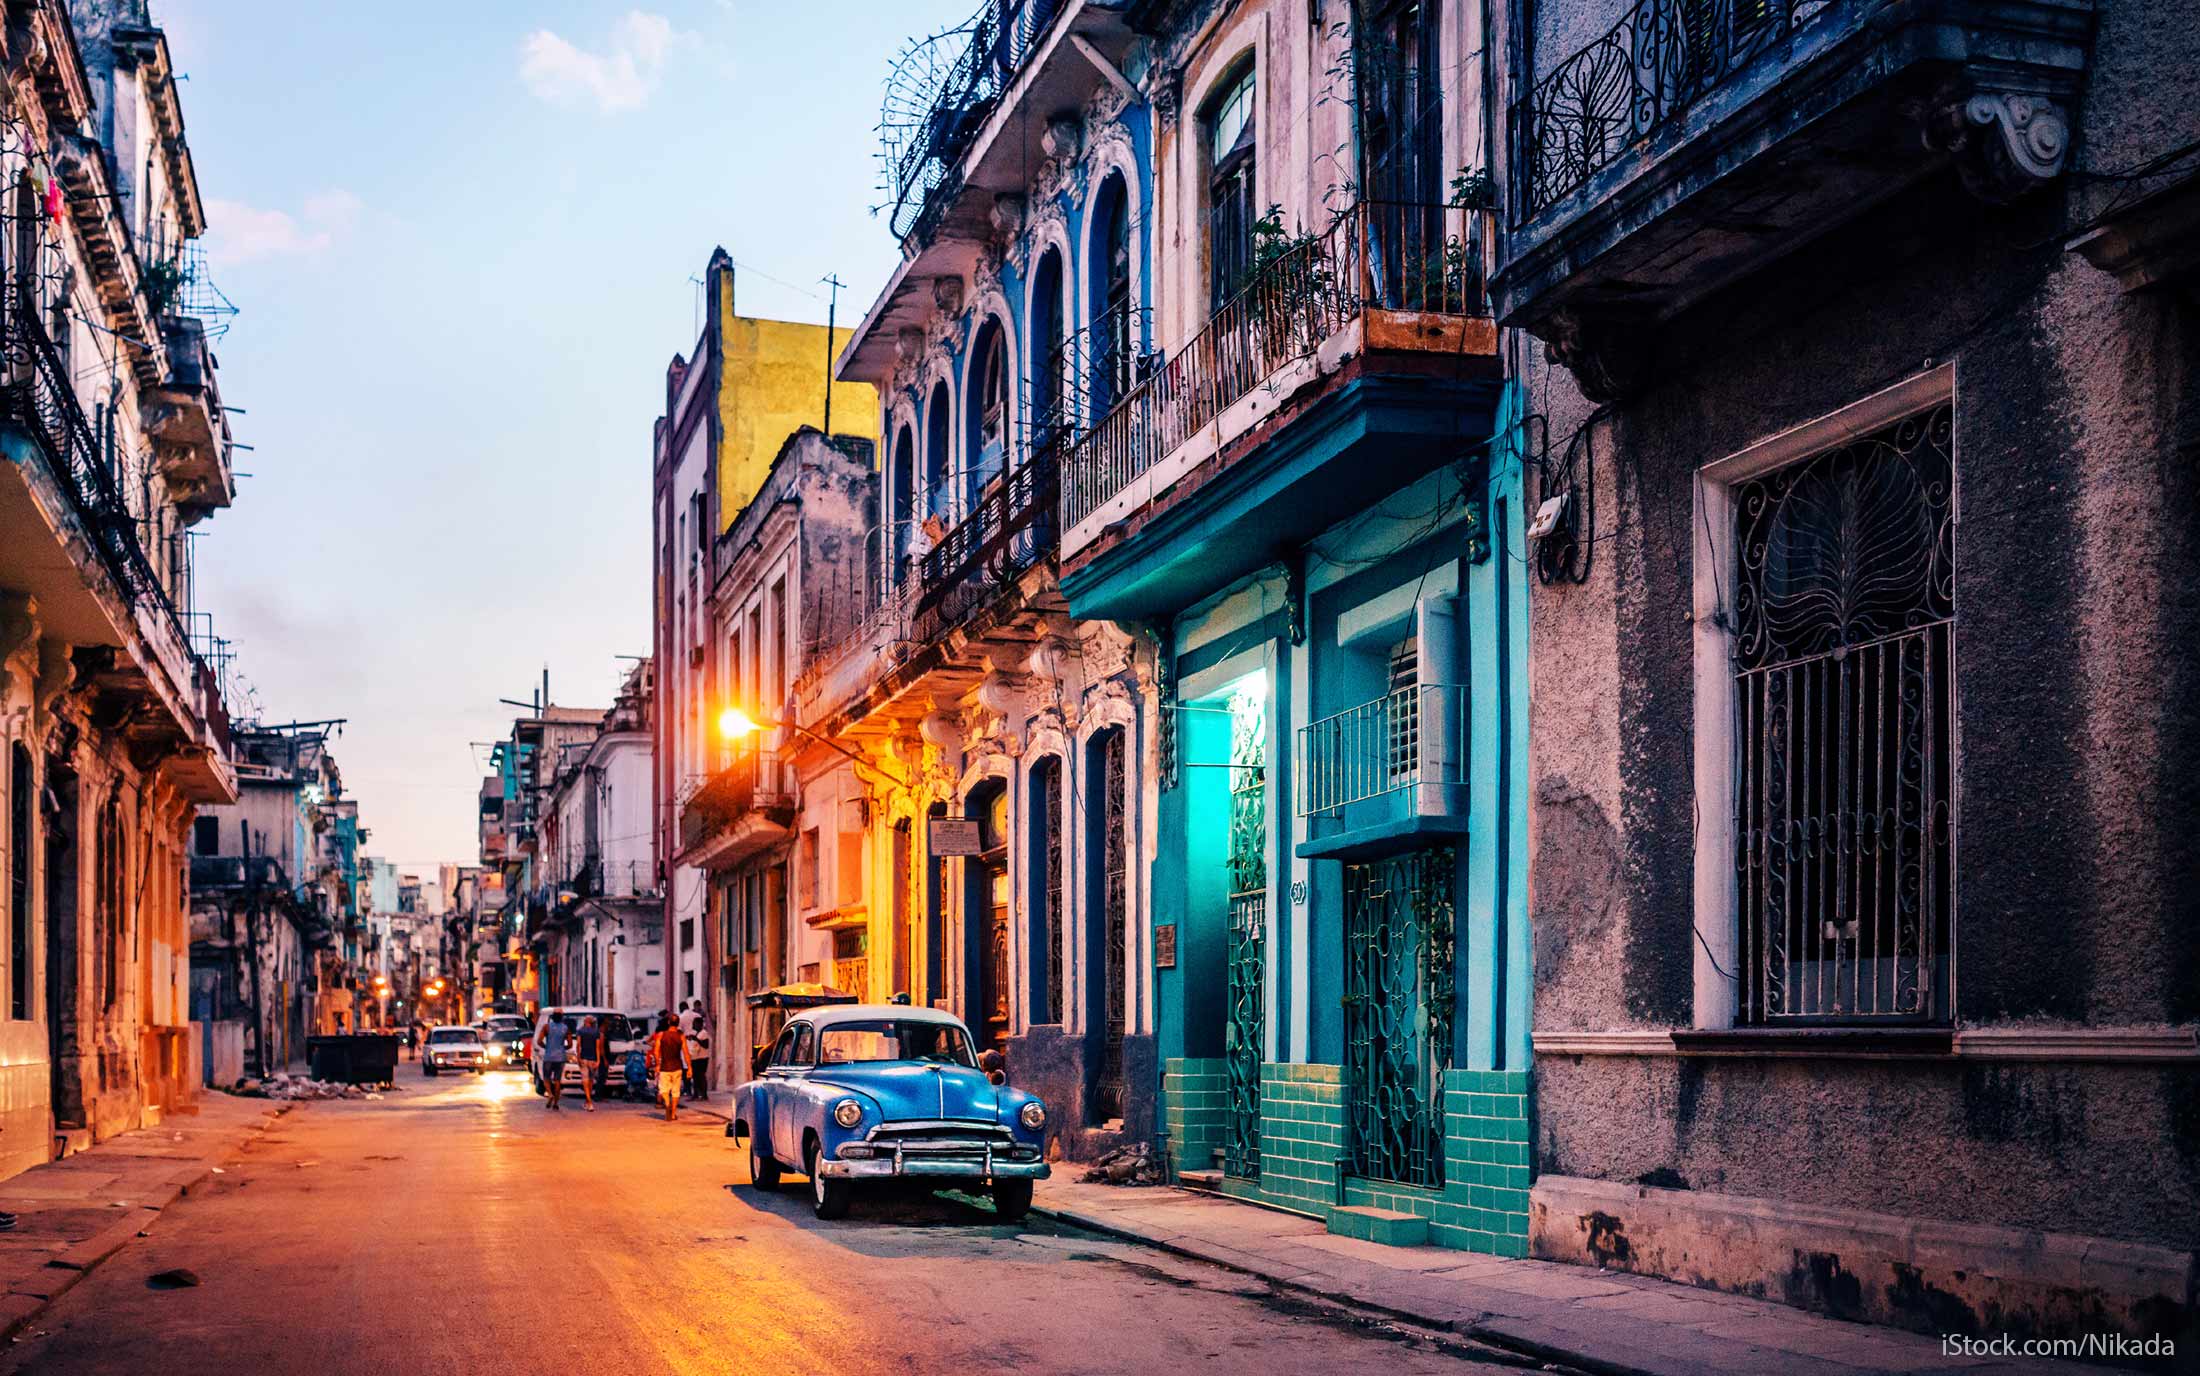 Cuba prevé alcanzar un crecimiento económico del 2% en 2018, gracias al impulso del turismo